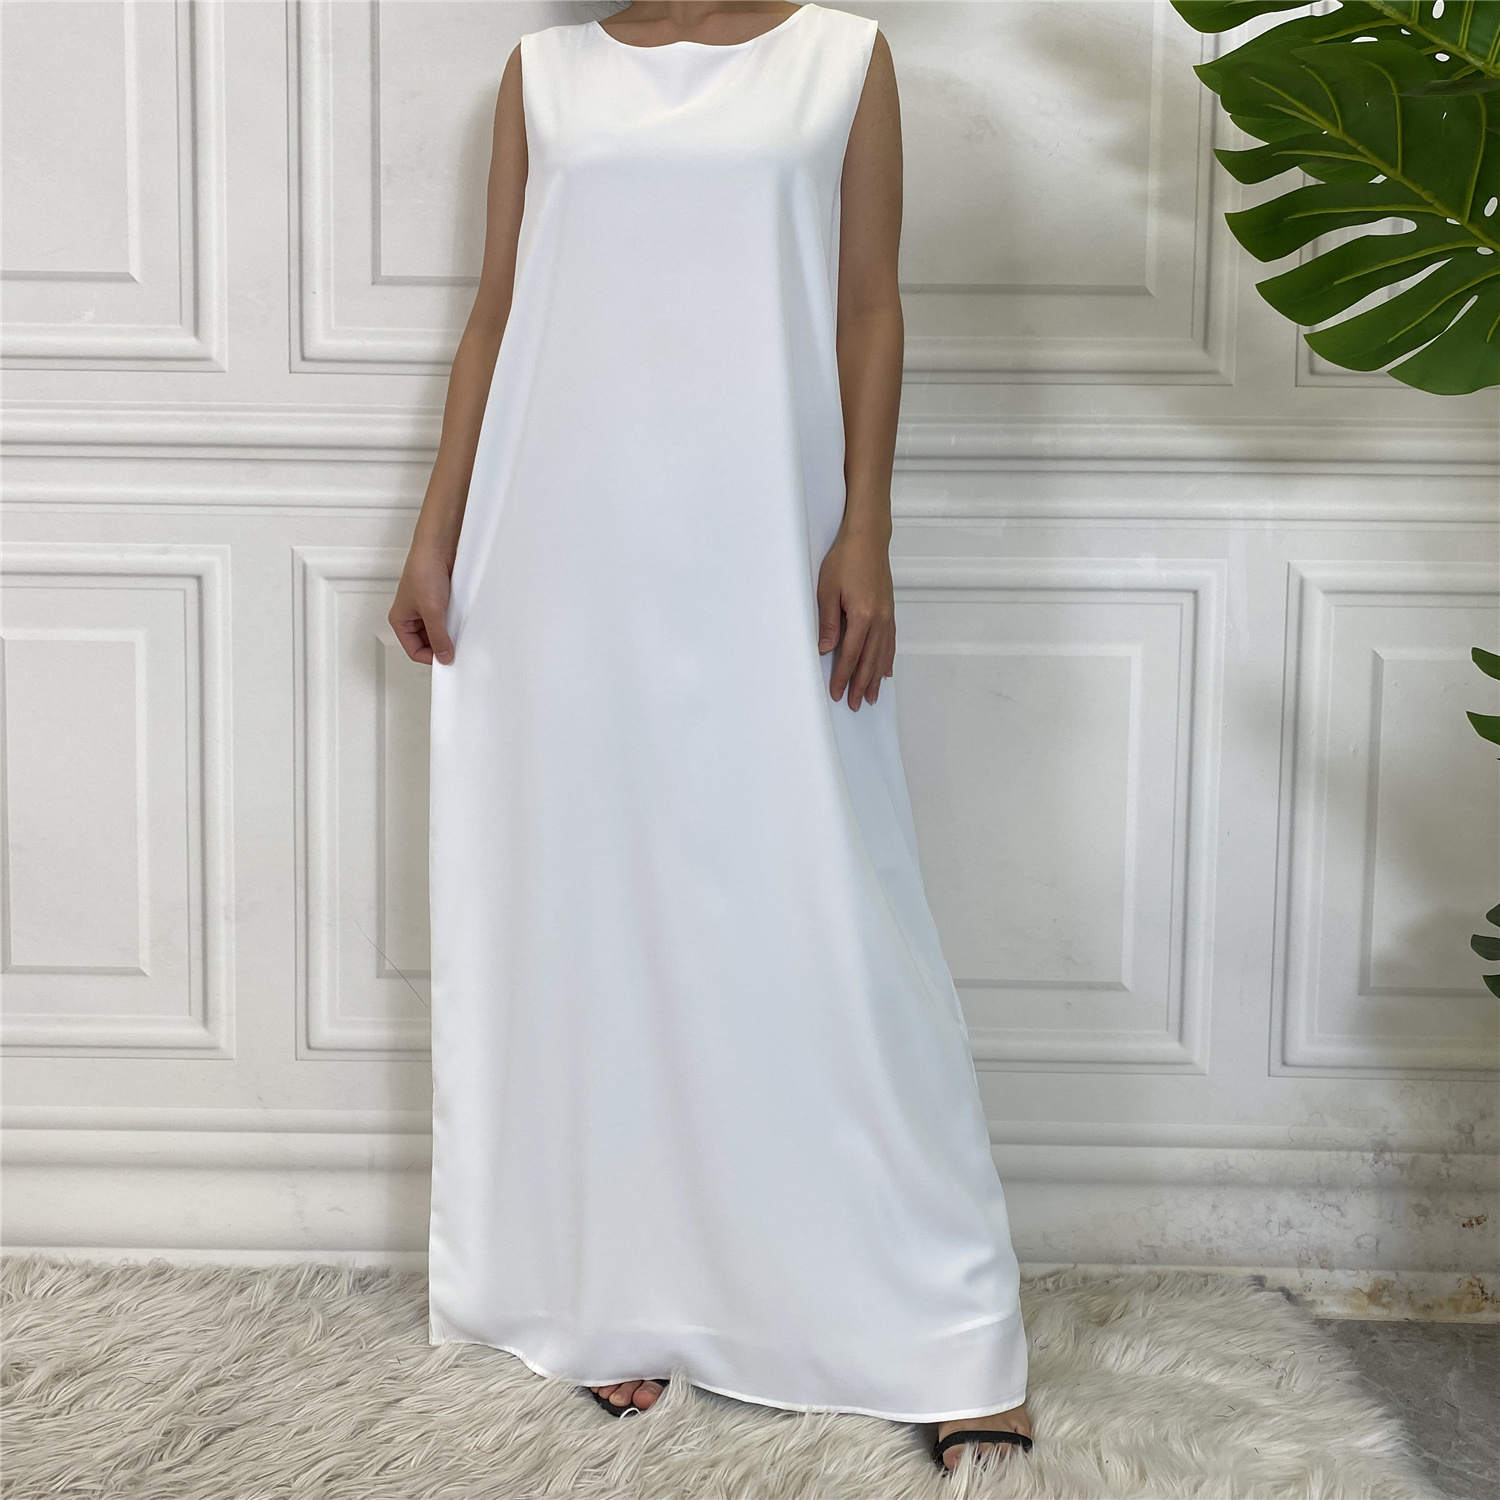 White Sleeveless Slip Dress - Slip Dress - Fajr Noor